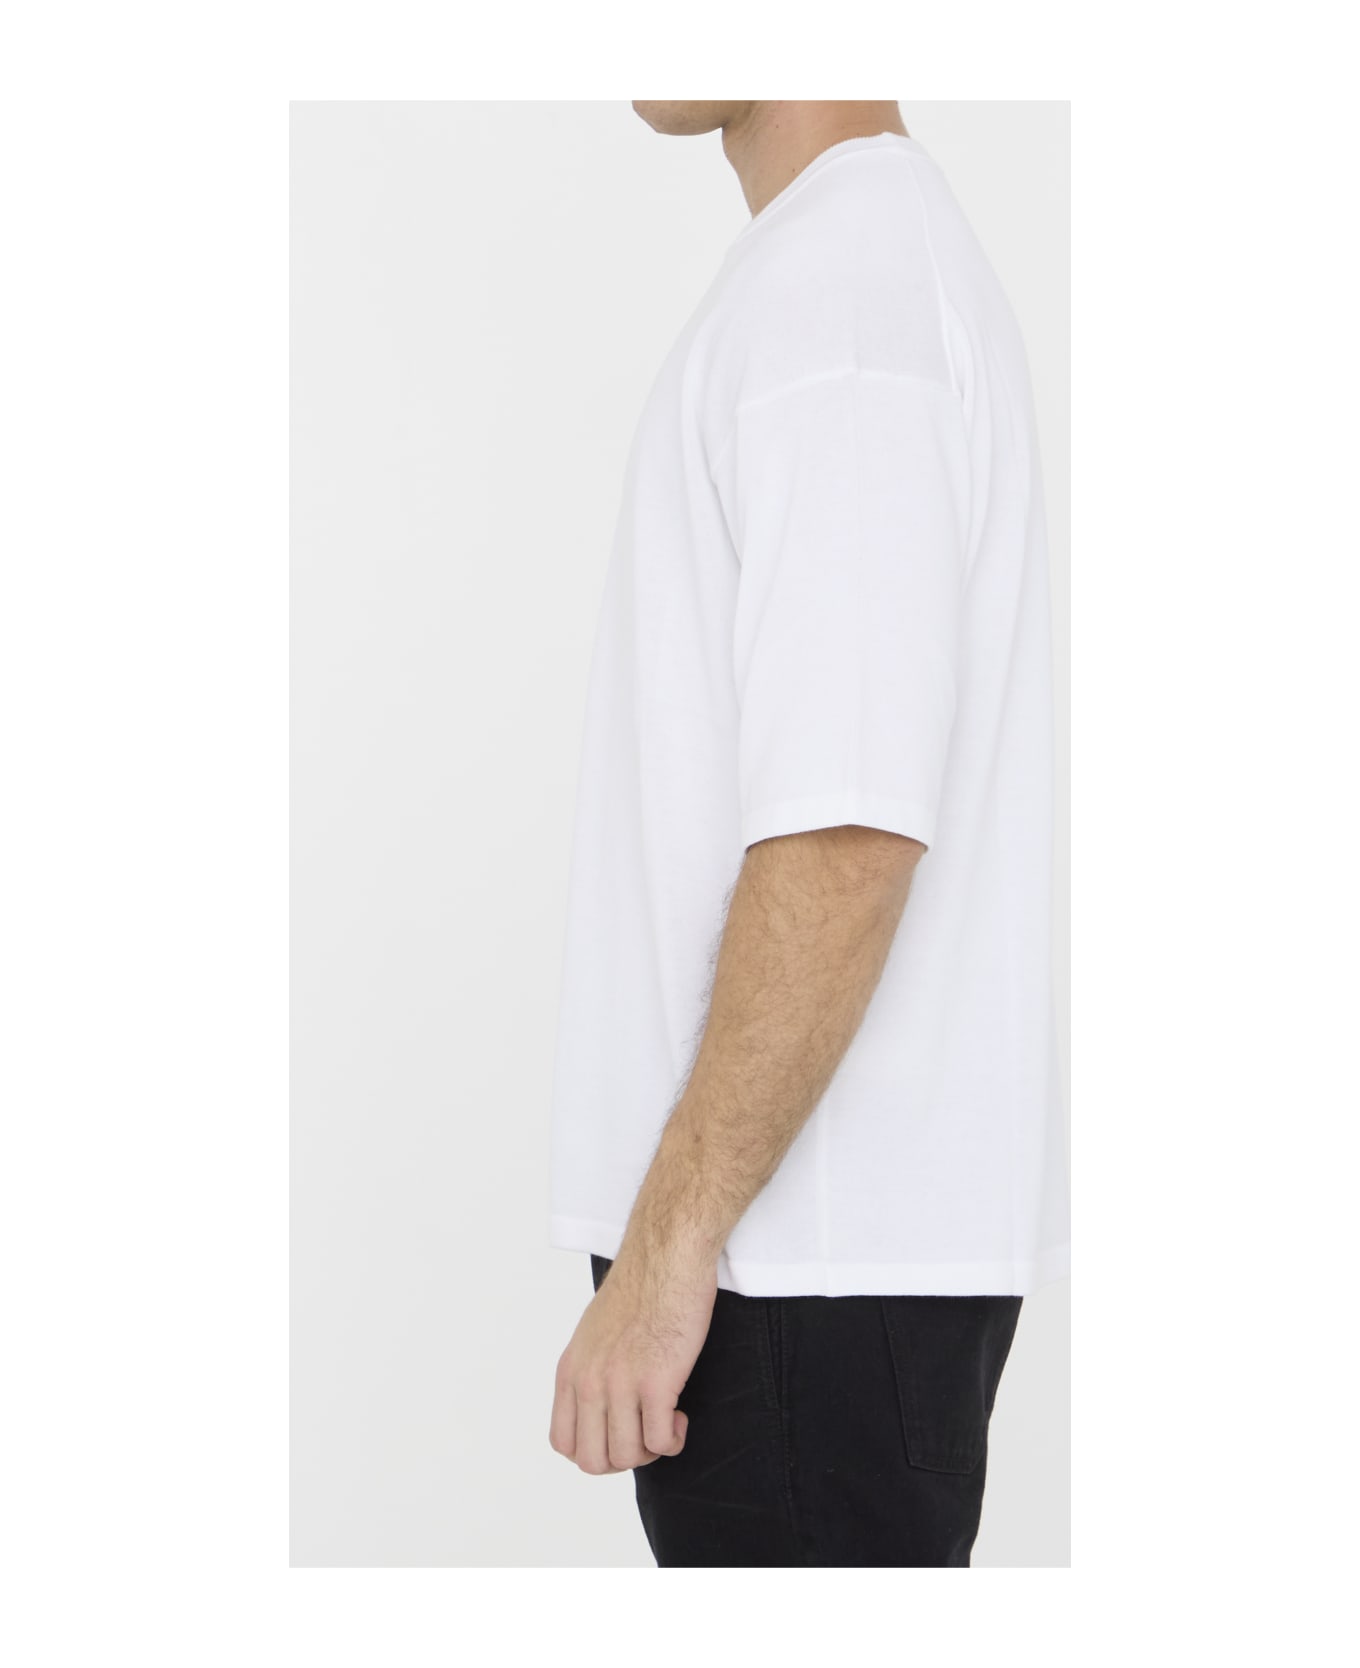 Roberto Collina Cotton T-shirt - WHITE